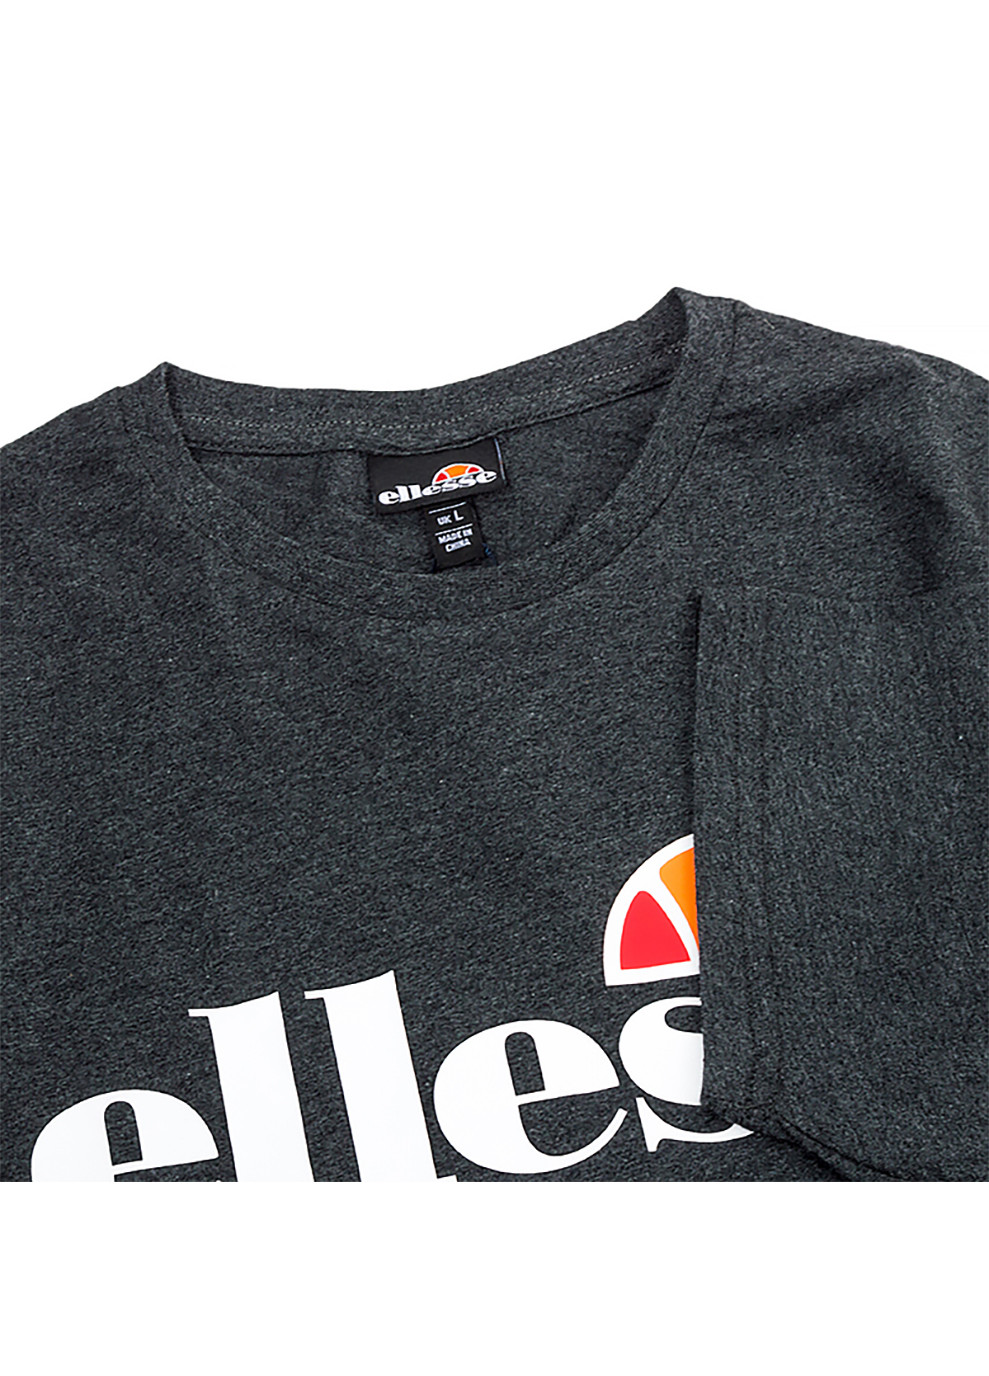 Серая мужская футболка sl prado серый l (shc07405-dark-grey-marl l) Ellesse